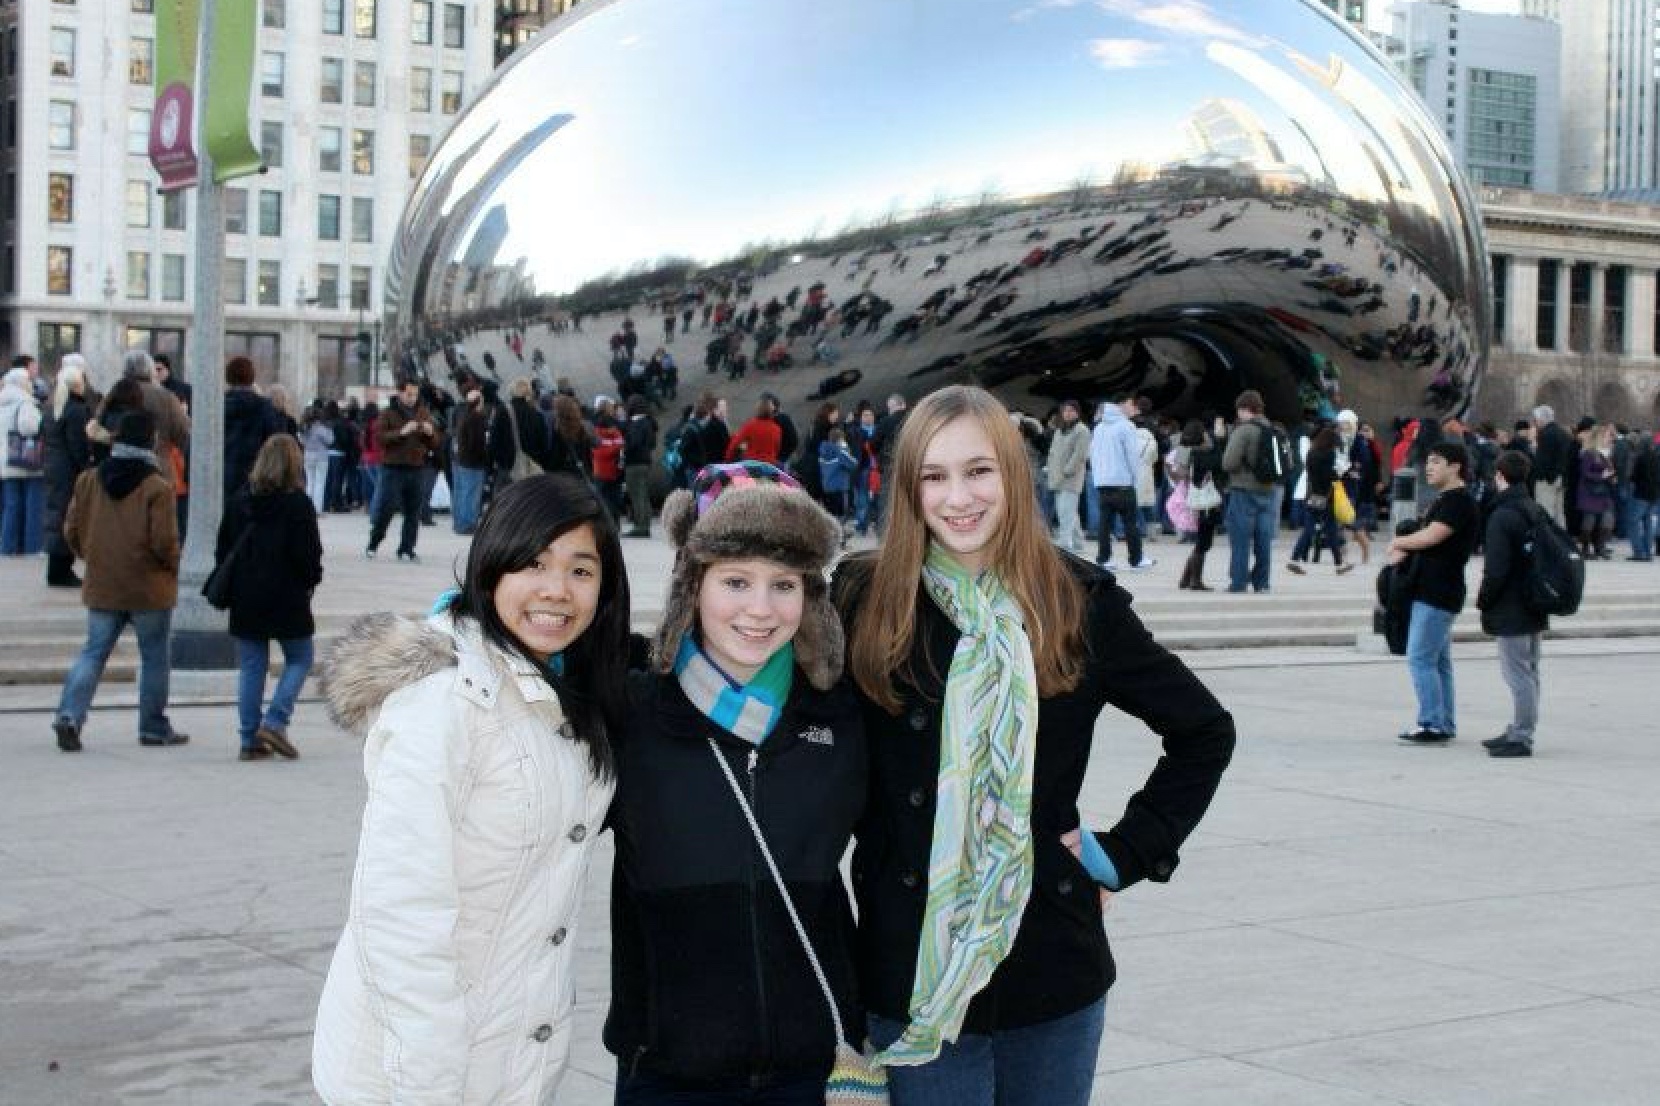 シカゴの観光スポット、The Bean。一番左が綿貫さん